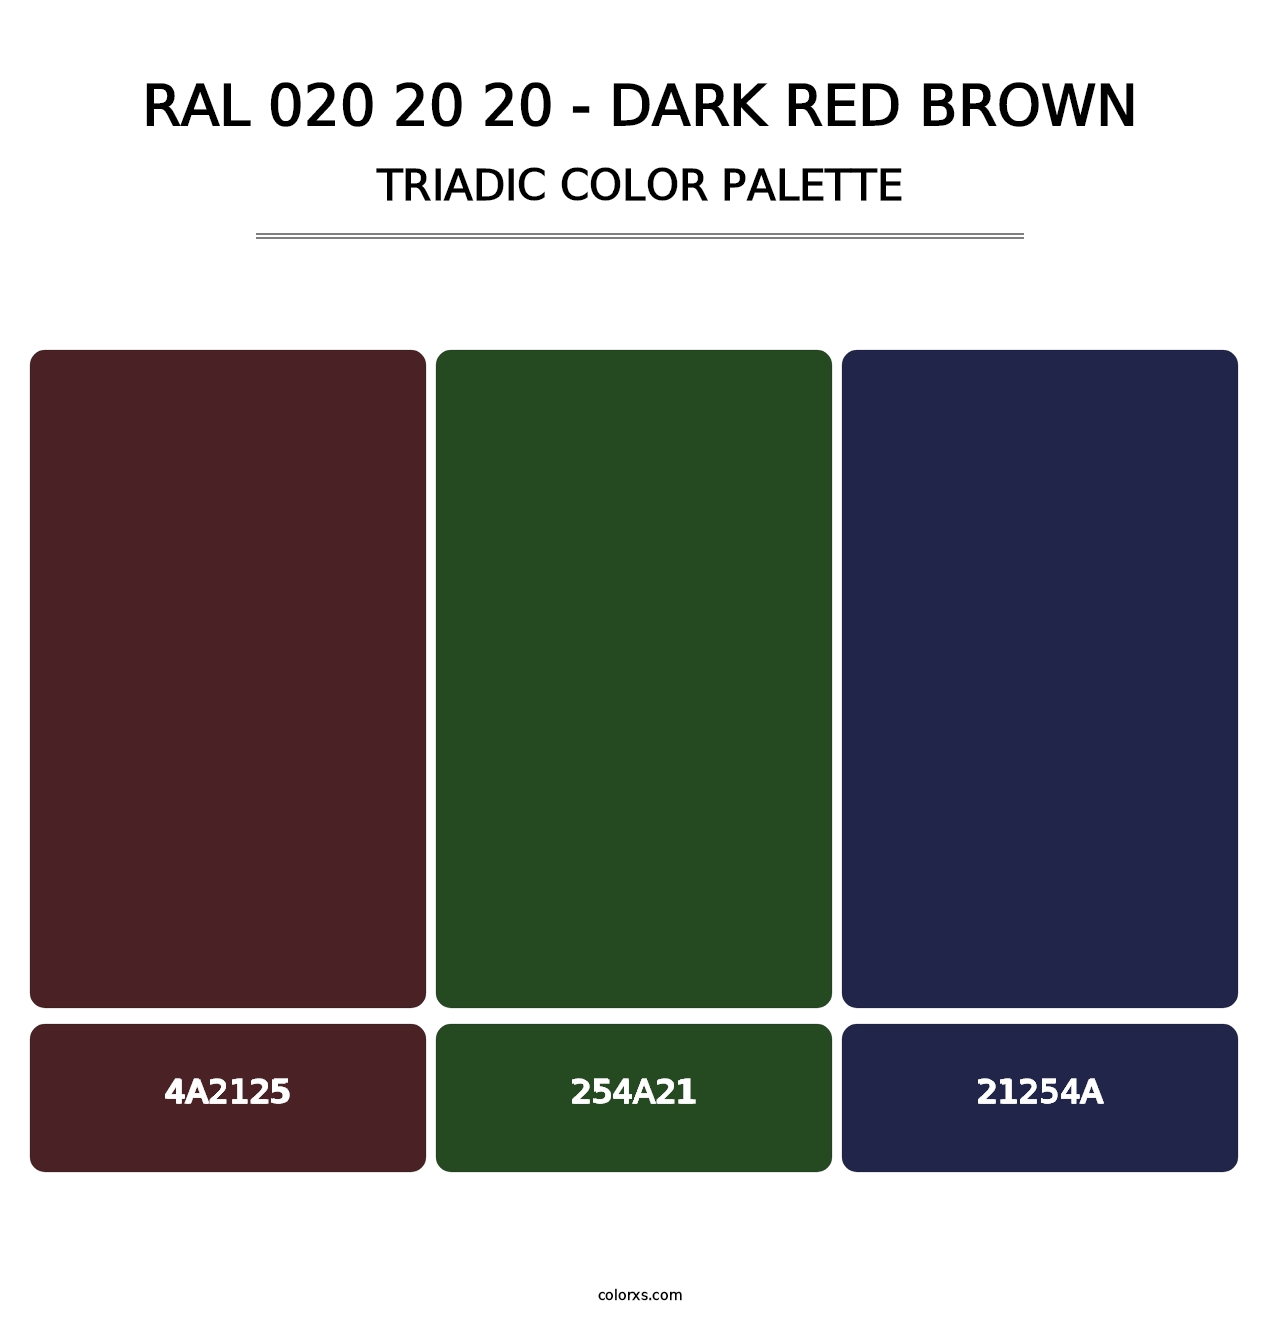 RAL 020 20 20 - Dark Red Brown - Triadic Color Palette